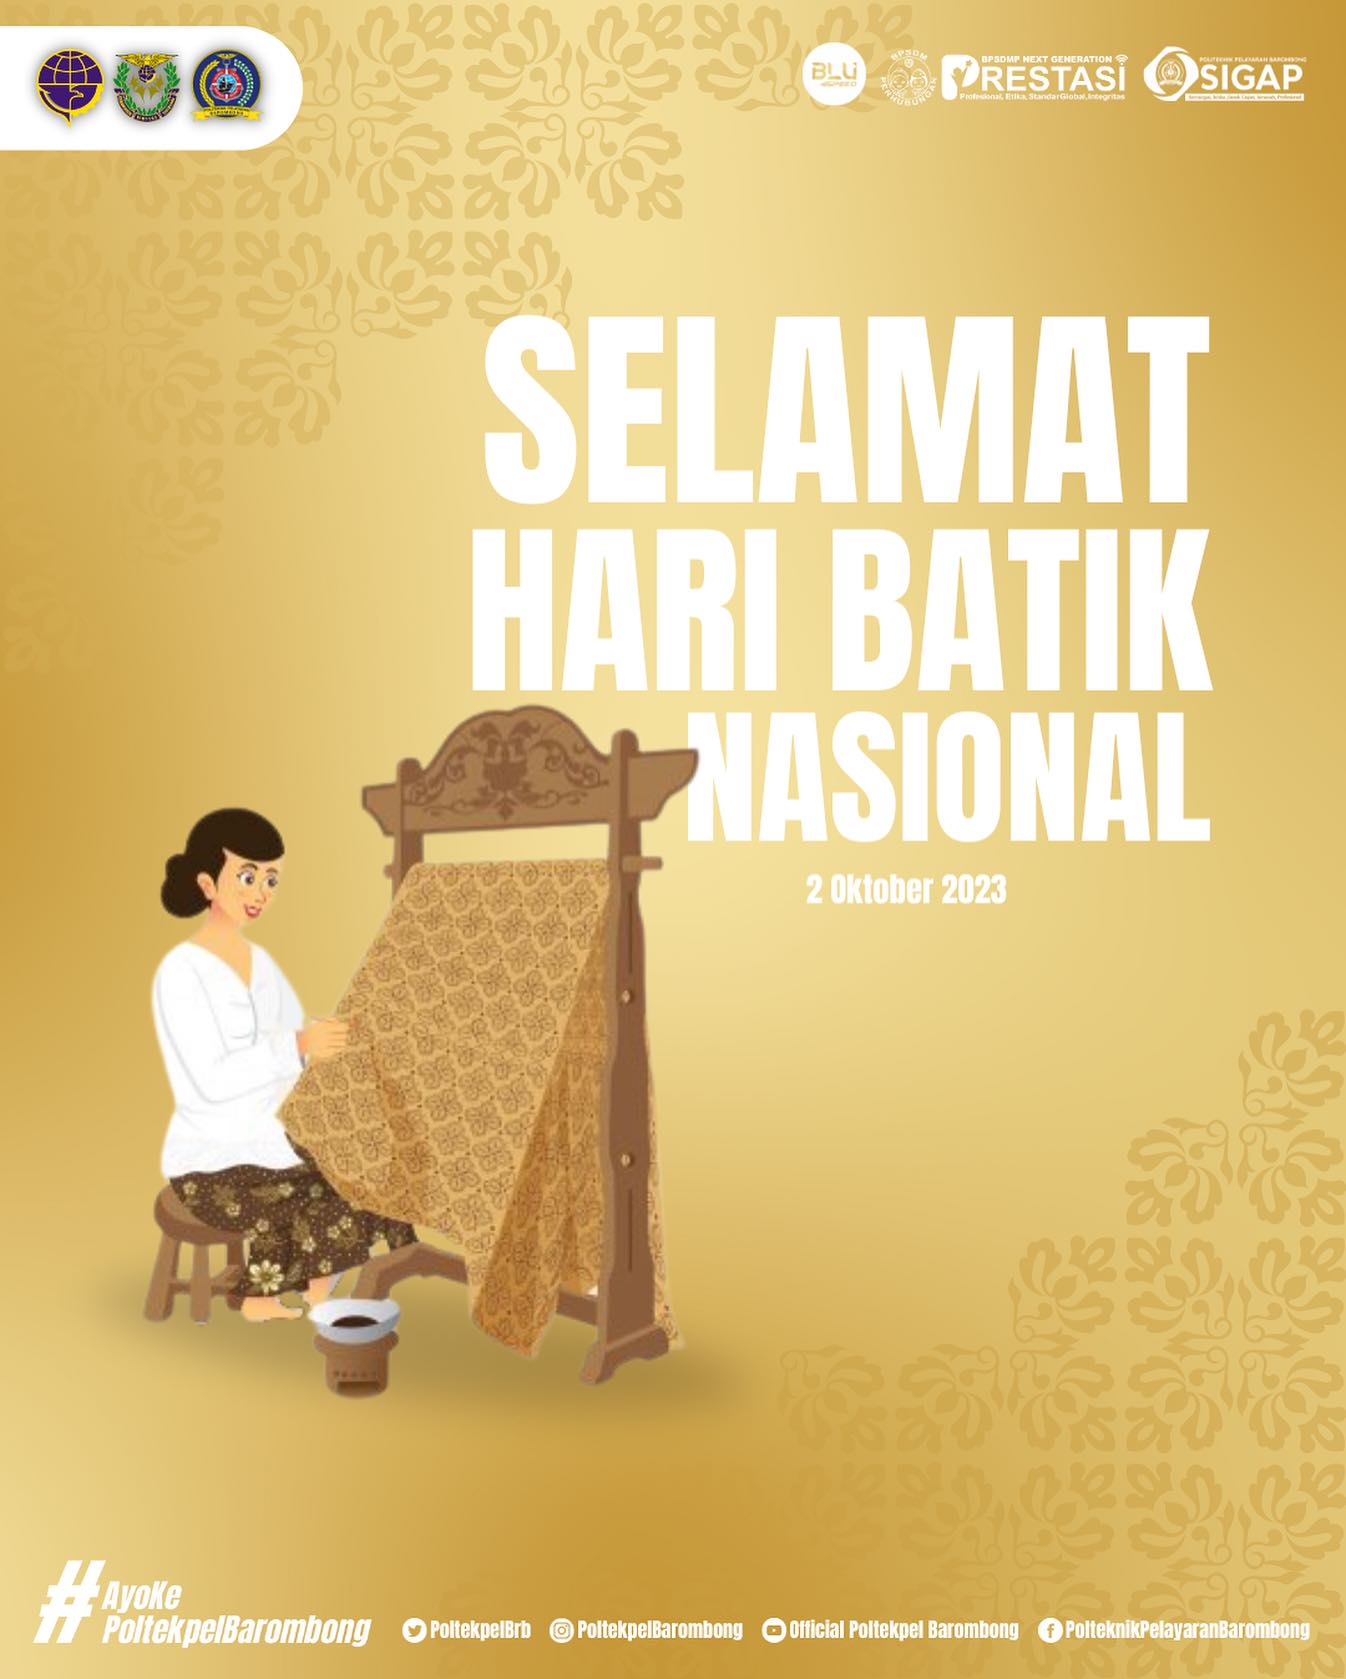 You are currently viewing Selamat Hari Batik Nasional 2 Oktober 2023